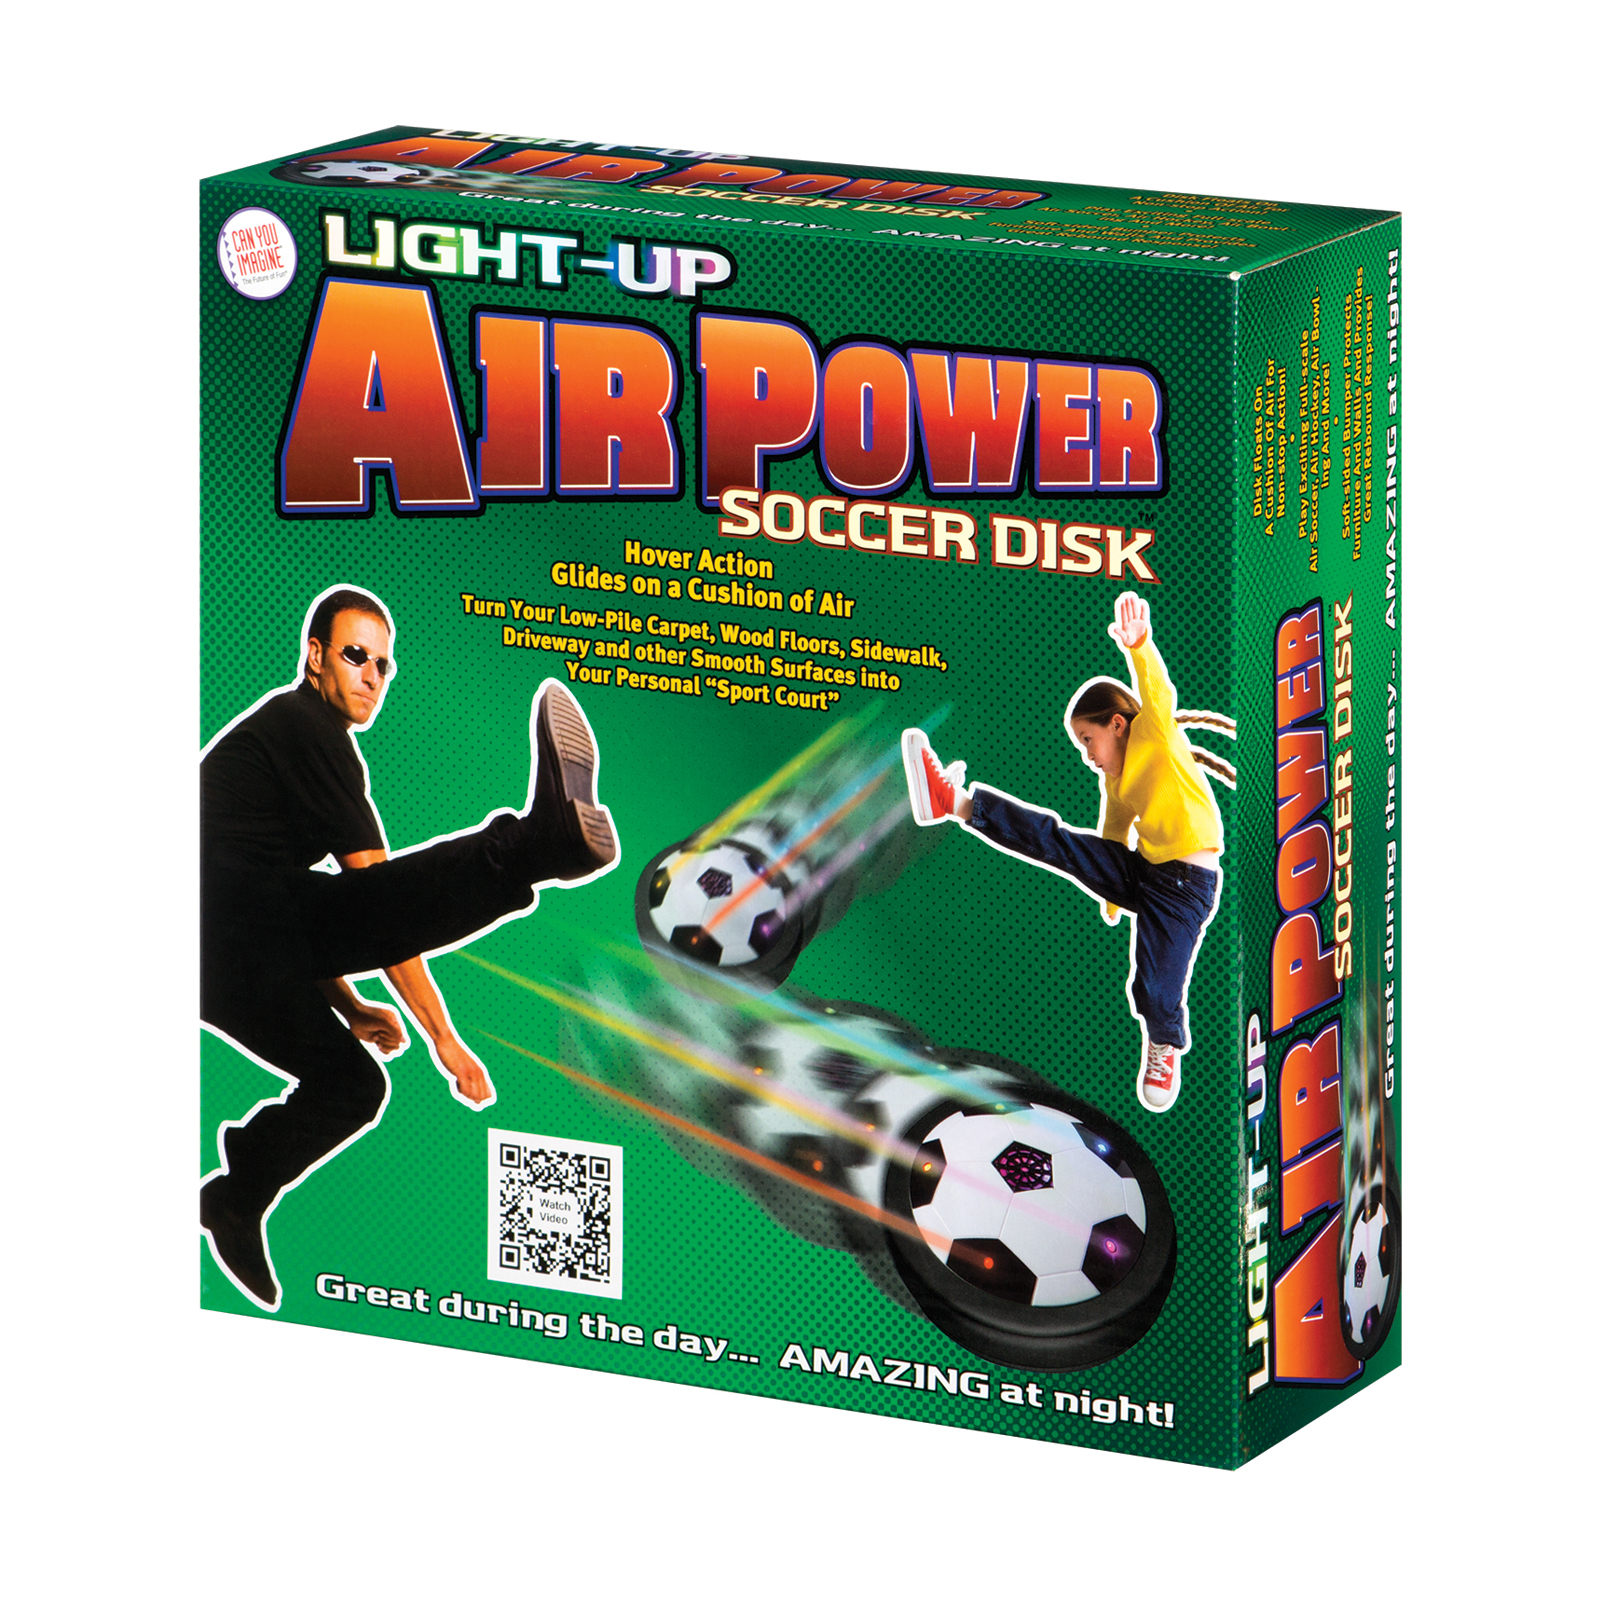 hover soccer ball video